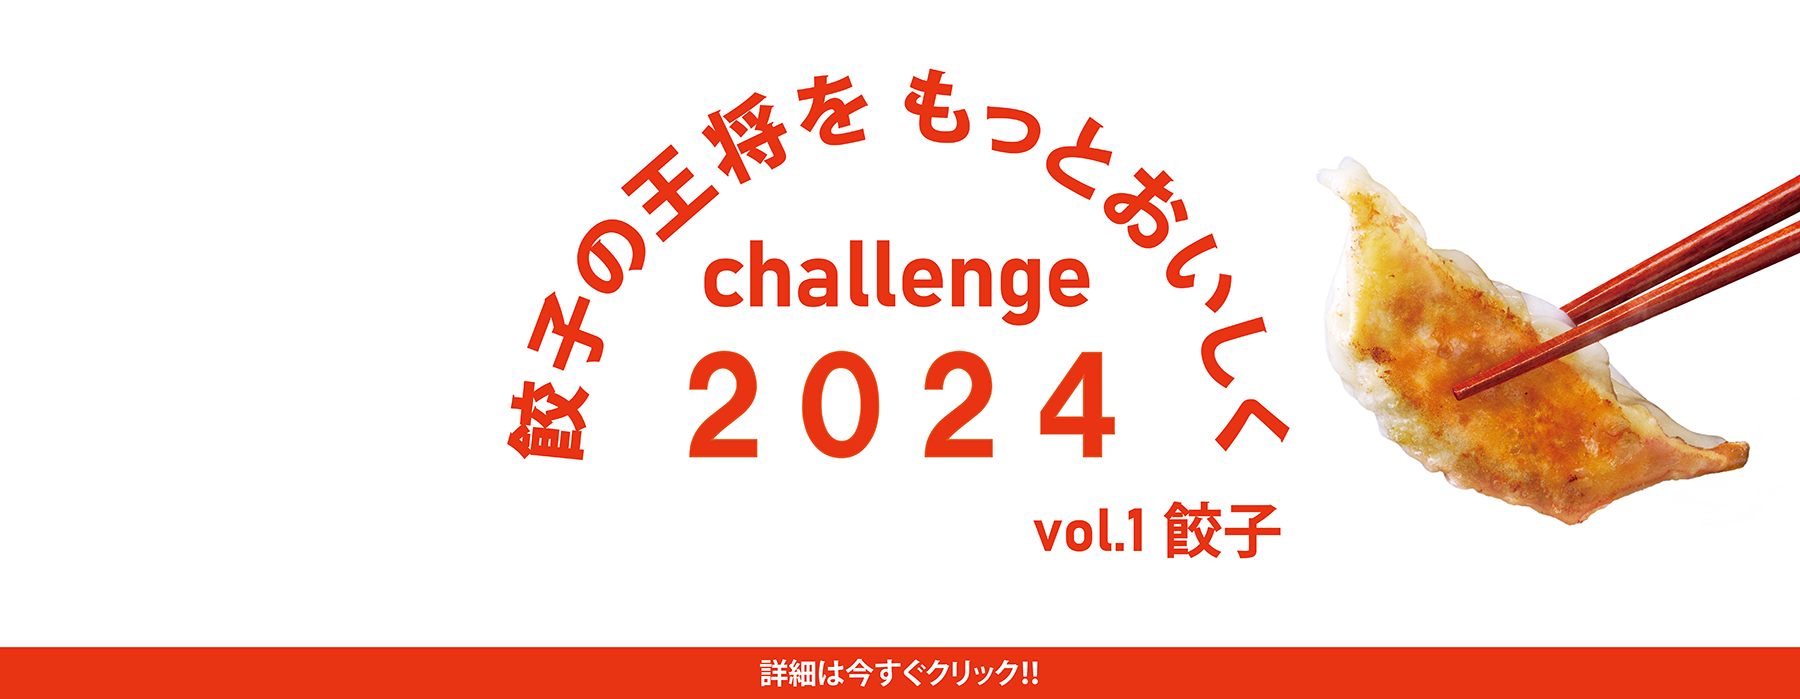 餃子の王将をもっとおいしく challenge2024 vol.1 餃子